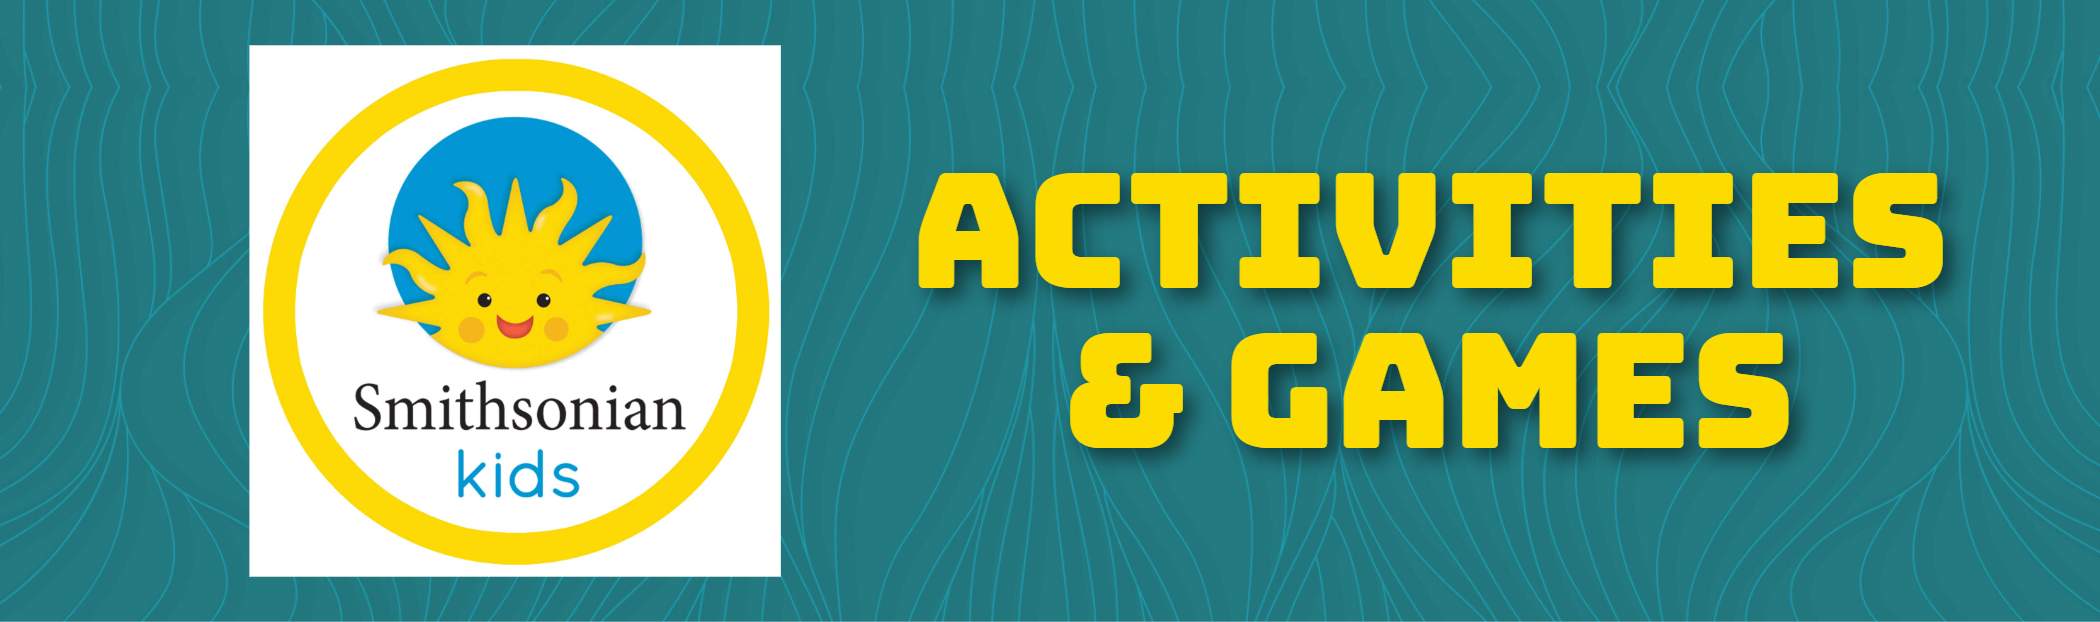 ACTIVITIES & GAMES